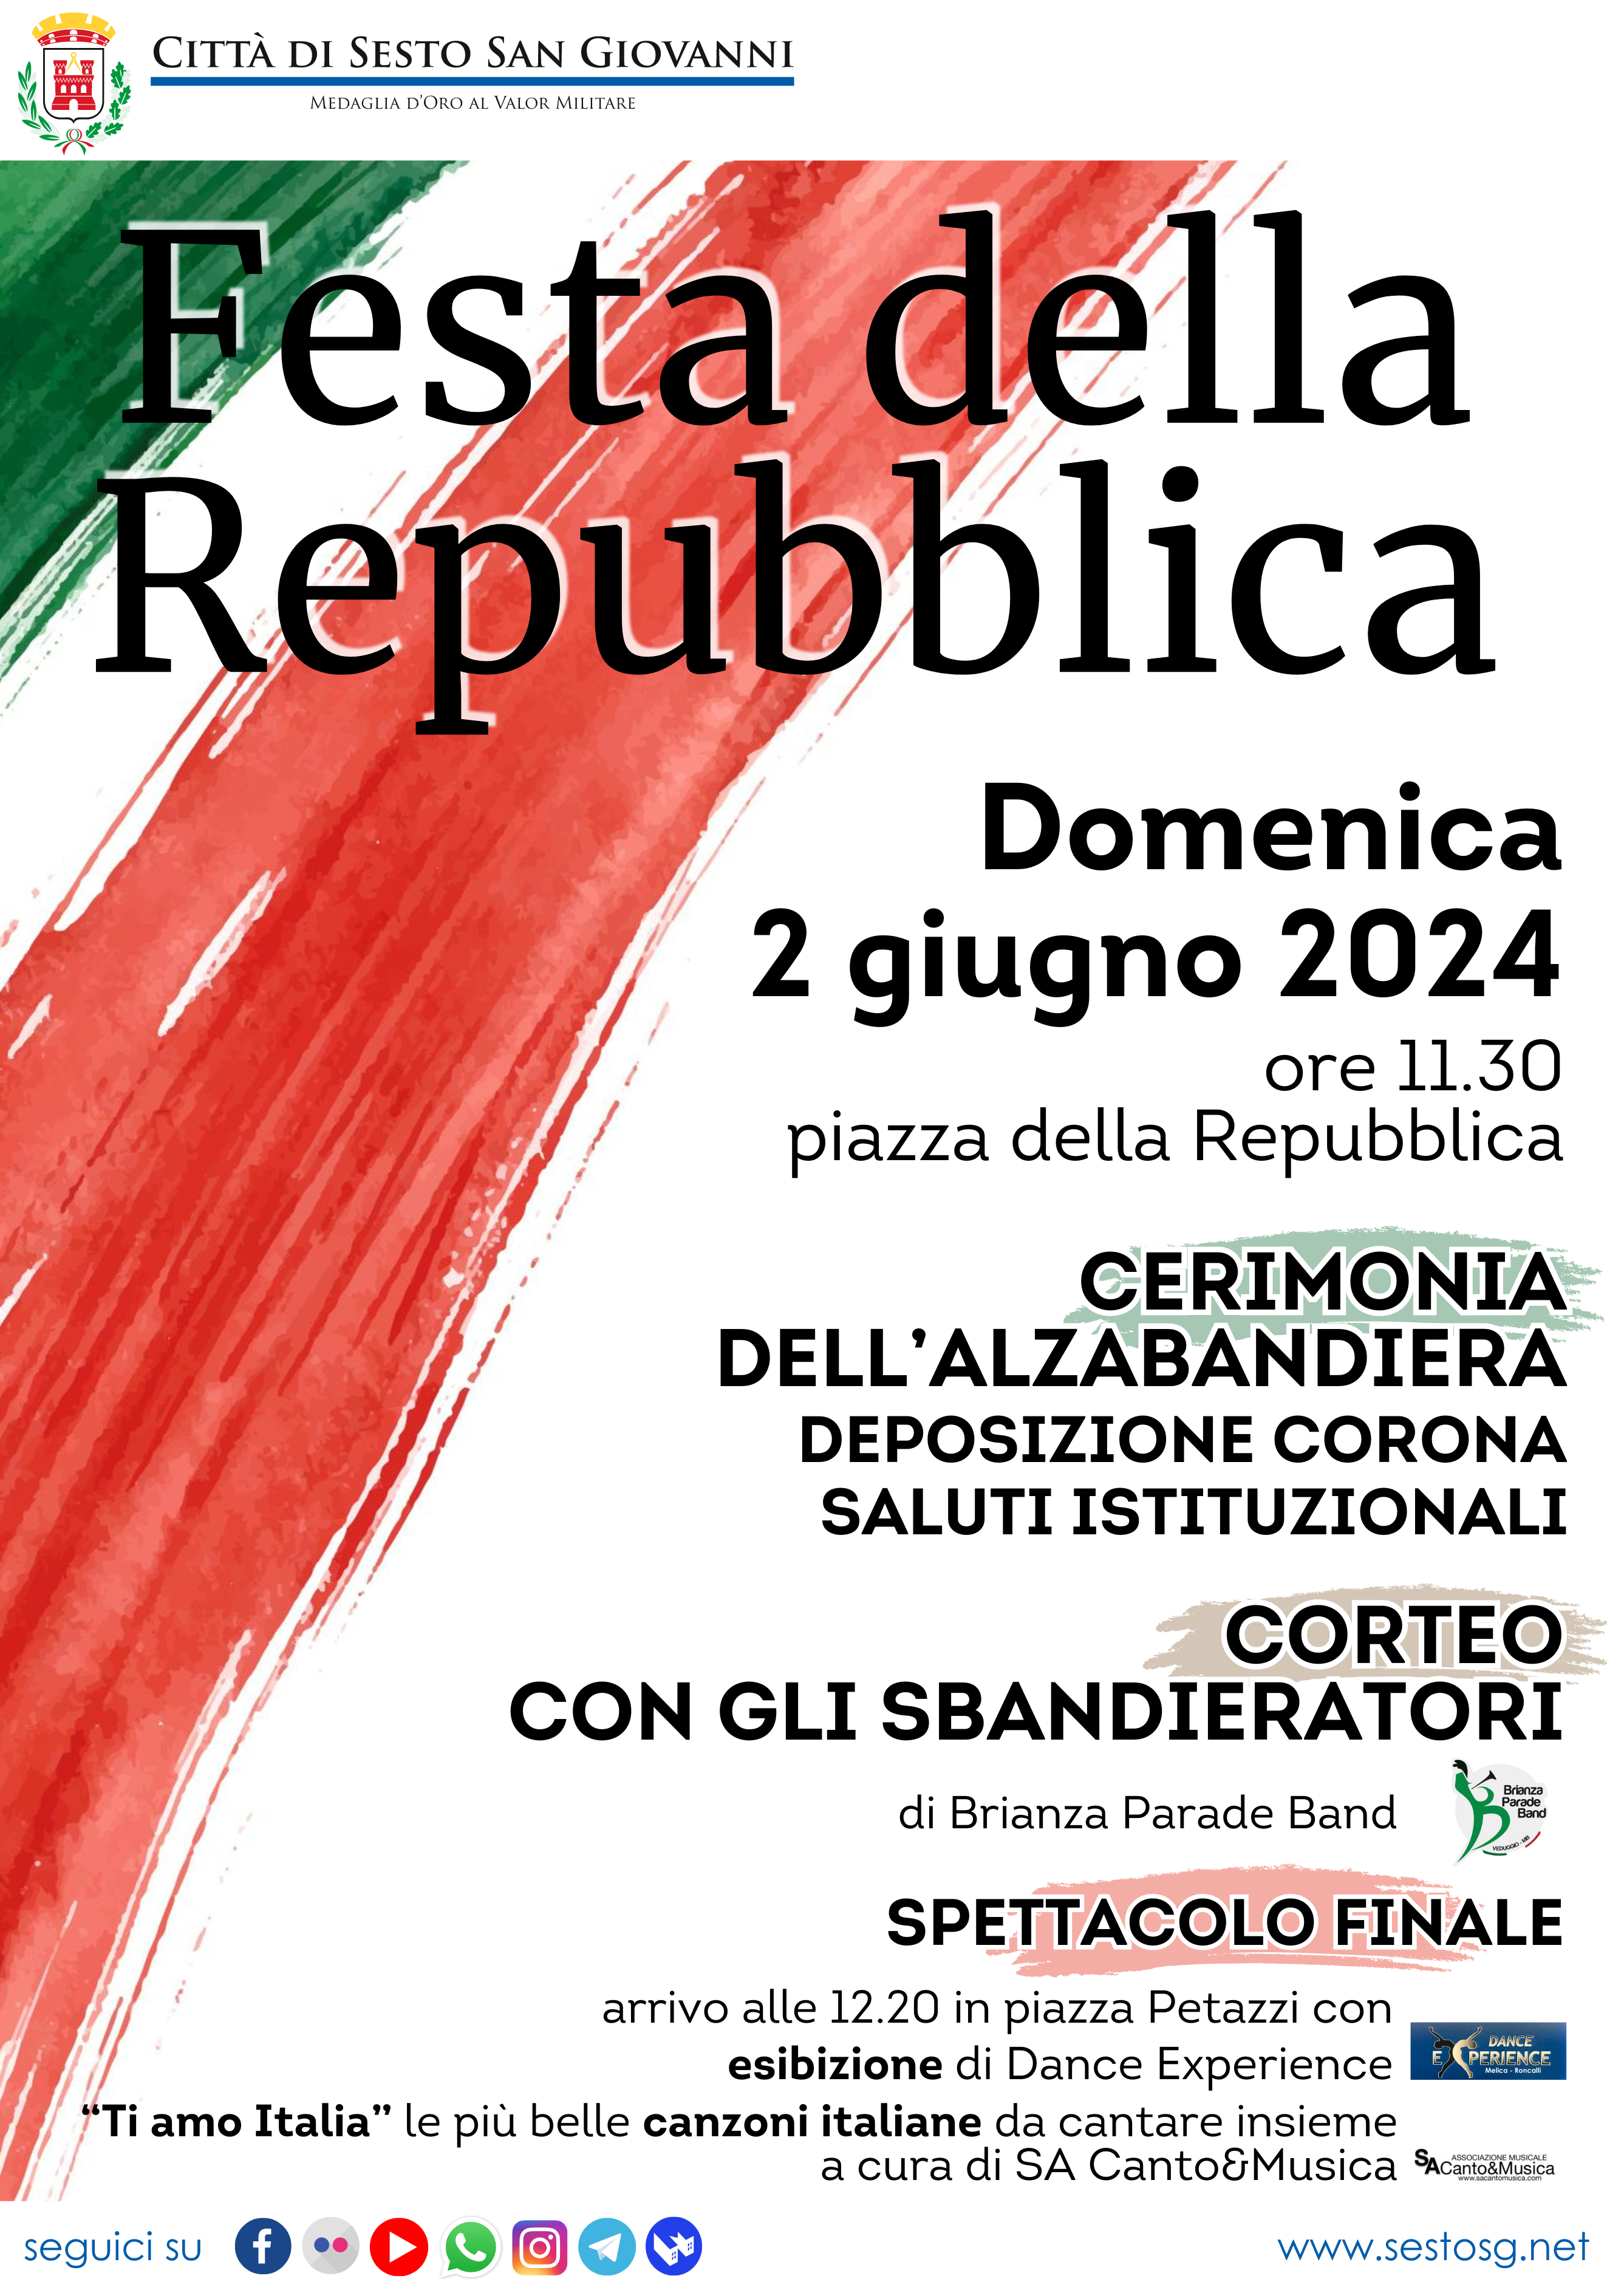 2 Giugno 2024: Festa della Repubblica Italiana